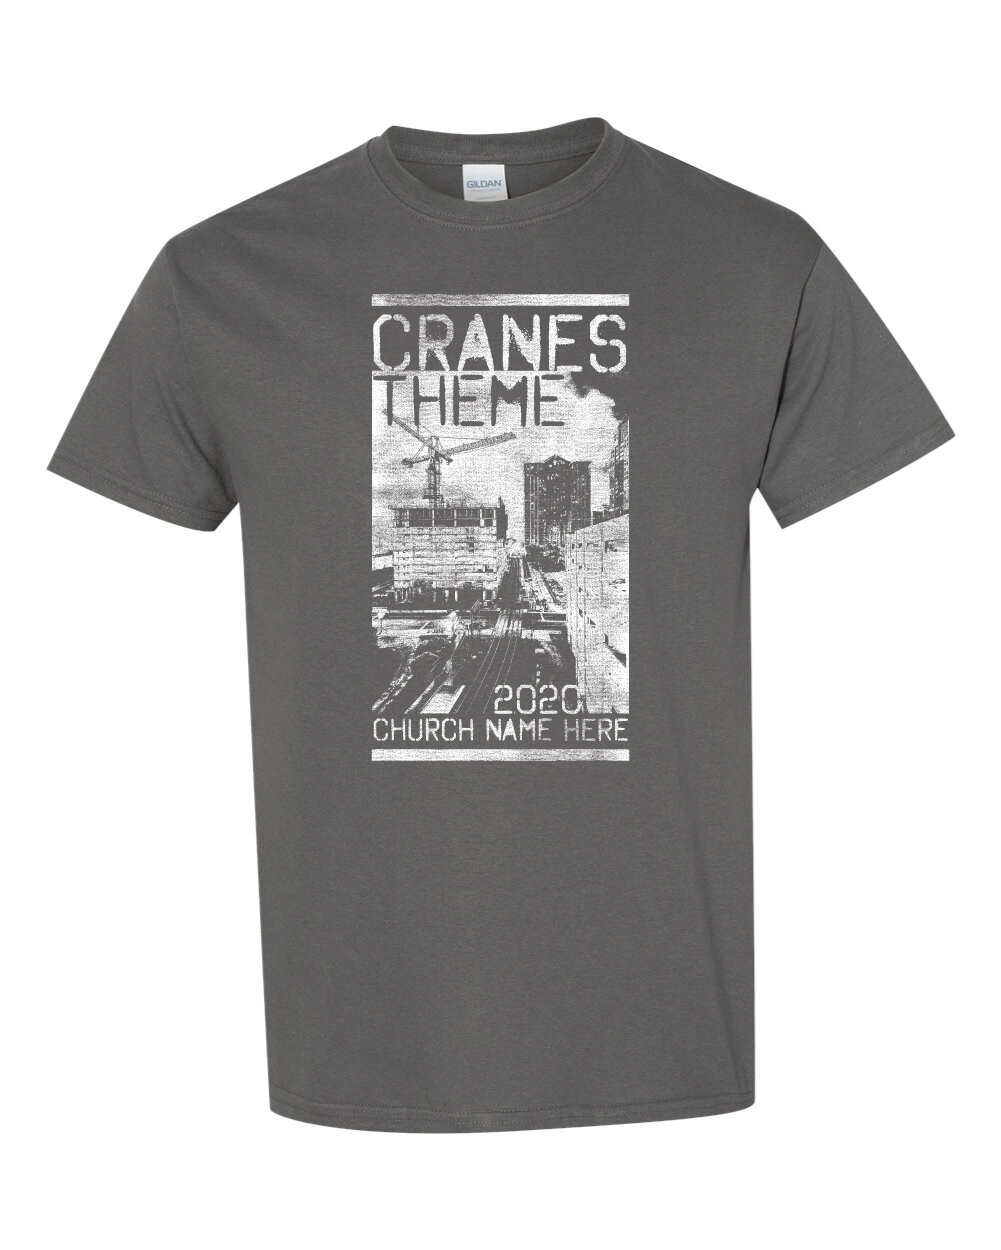 Crane 1-03.jpg